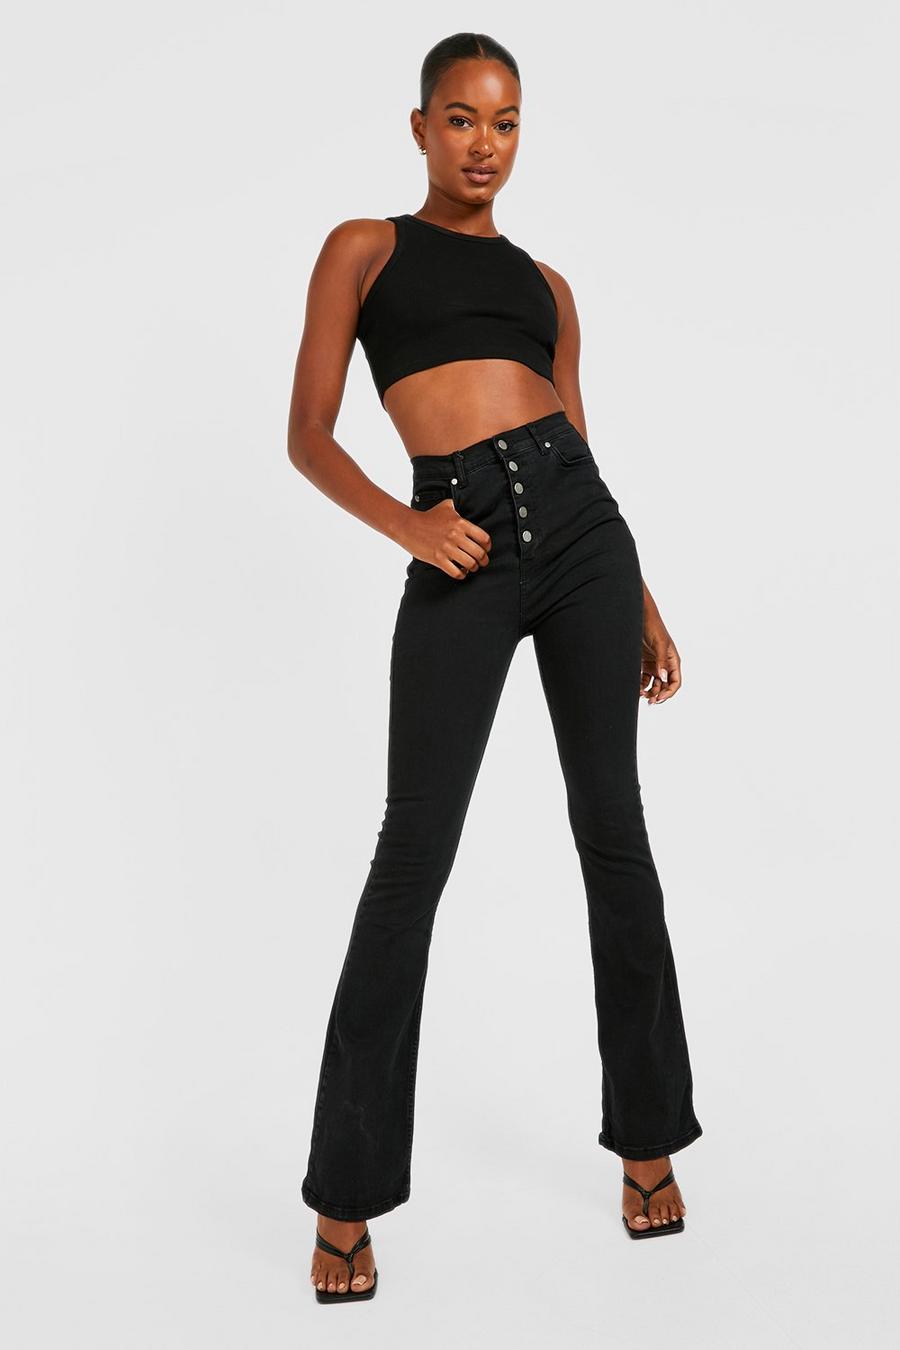 שחור ג'ינס מתרחב High Waisted עם כפתורים בחזית לנשים גבוהות image number 1